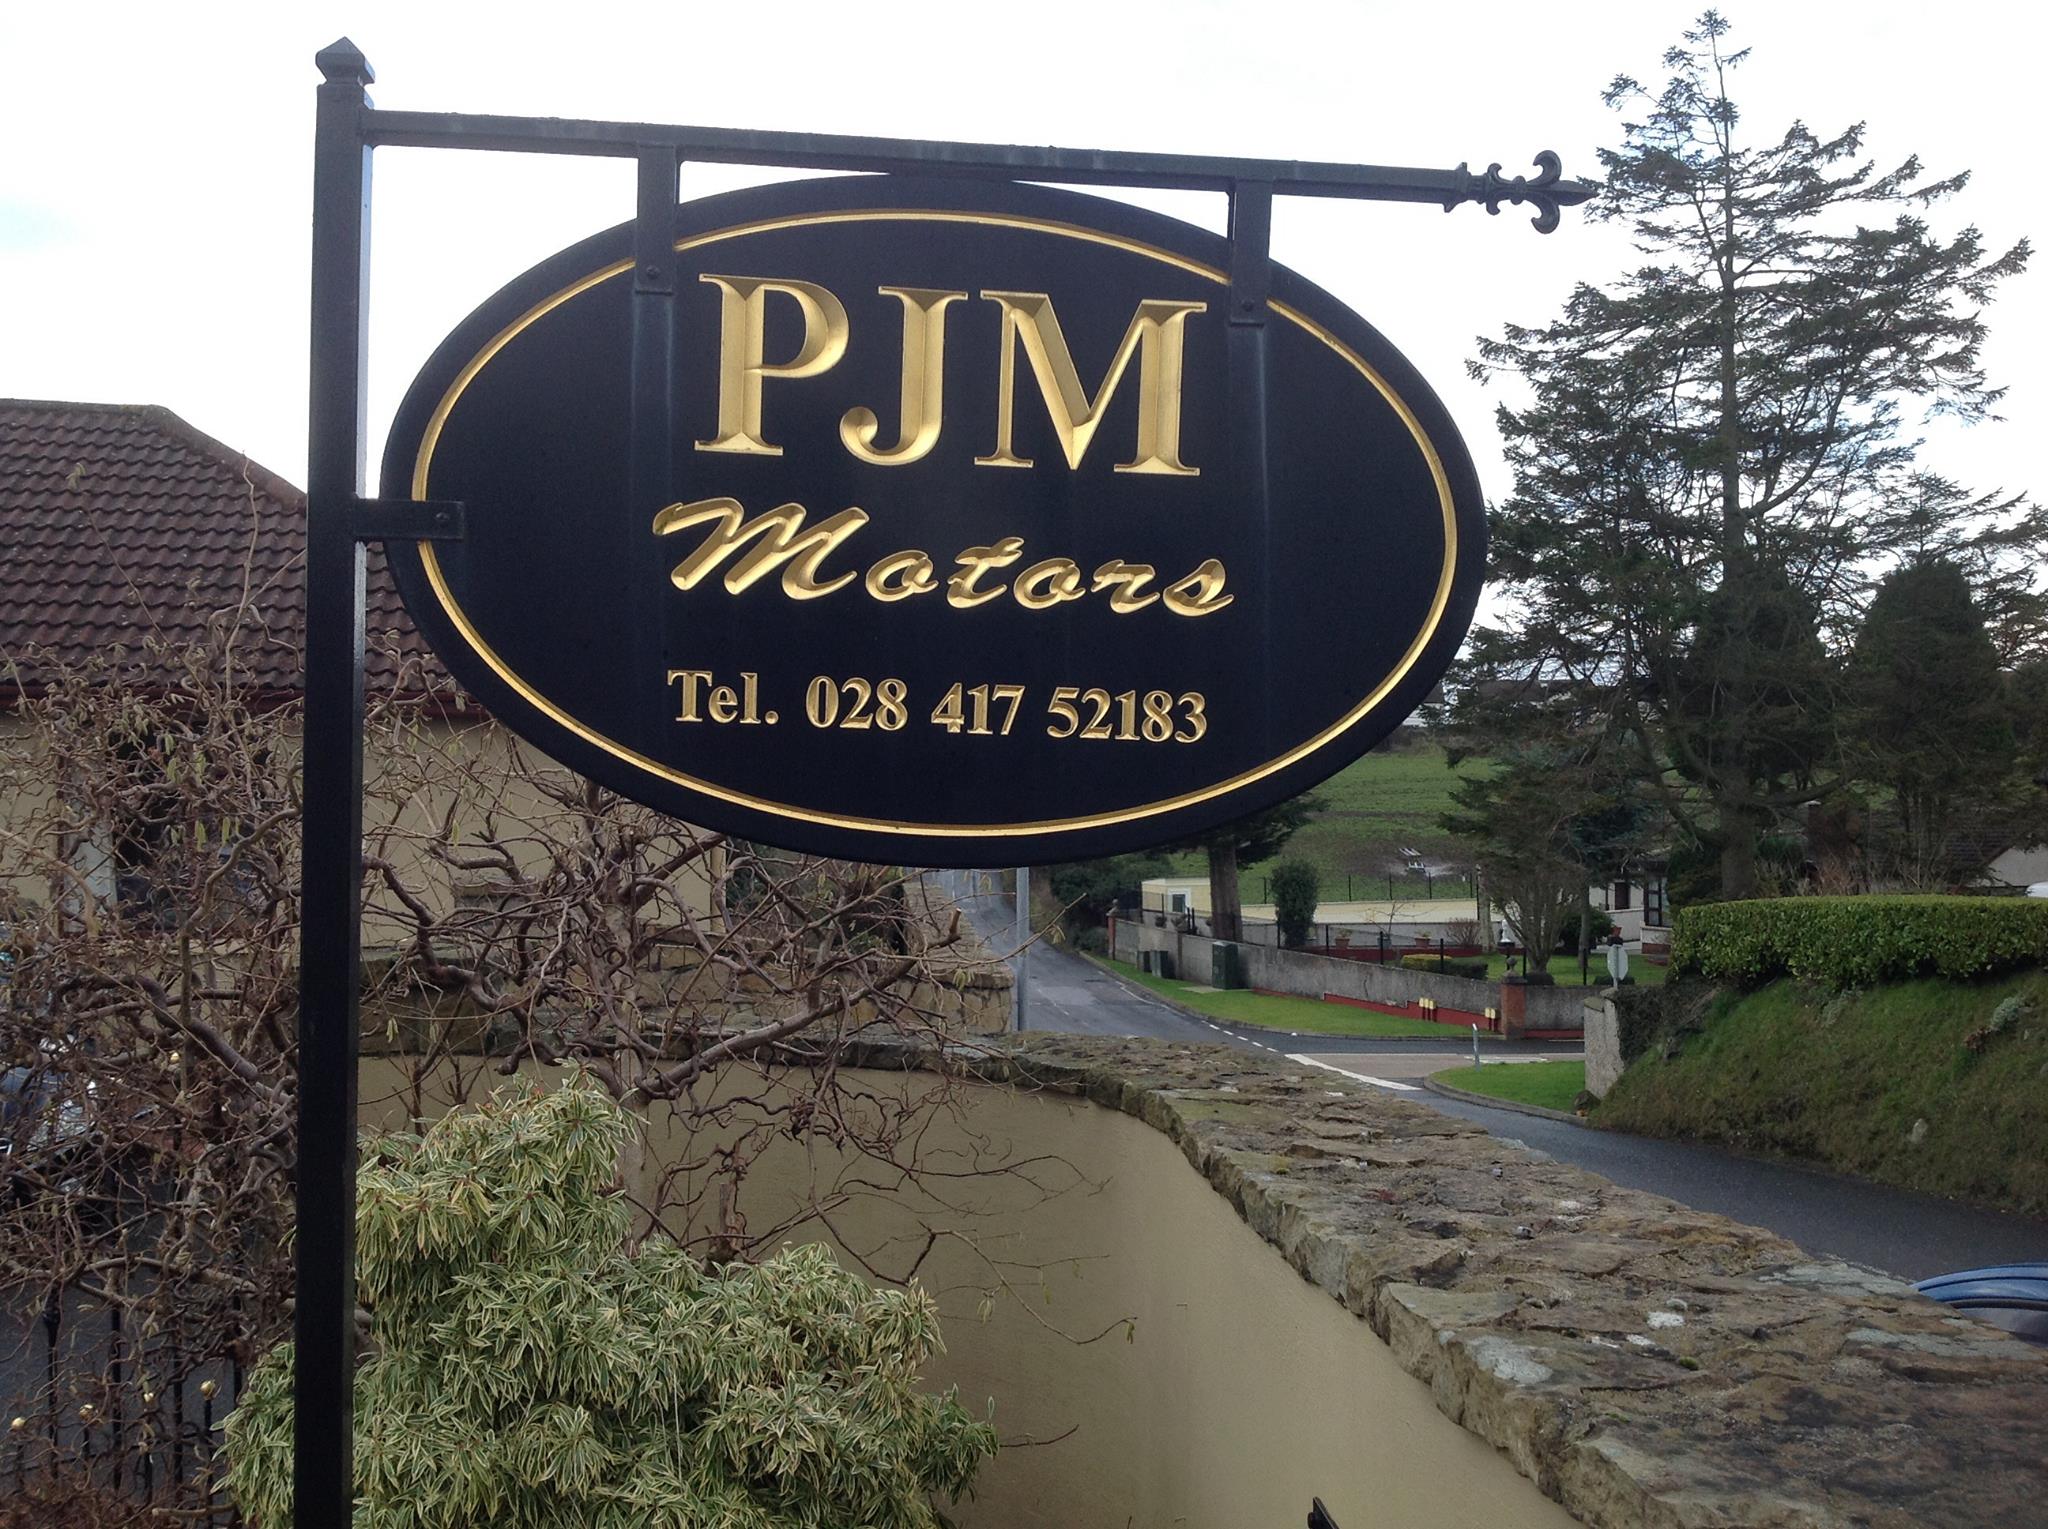 PJM Motors